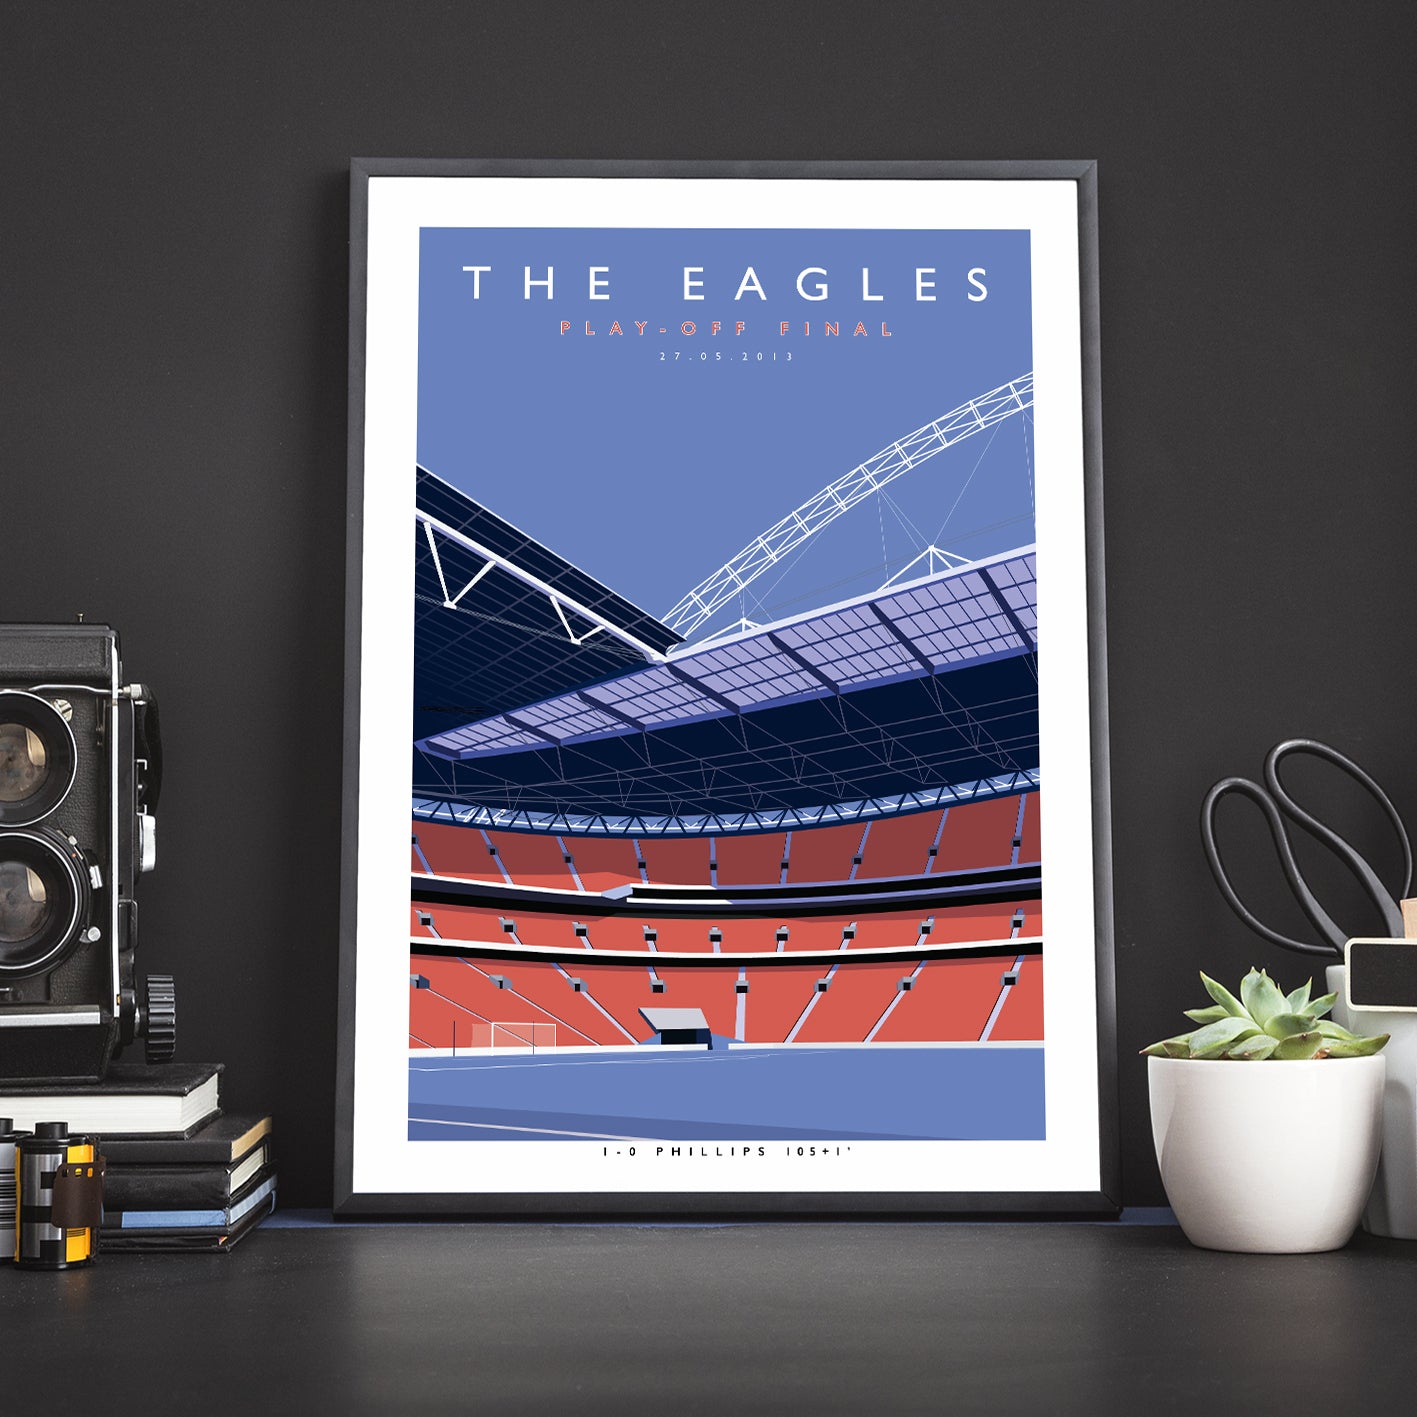 The Eagles Wembley - Print